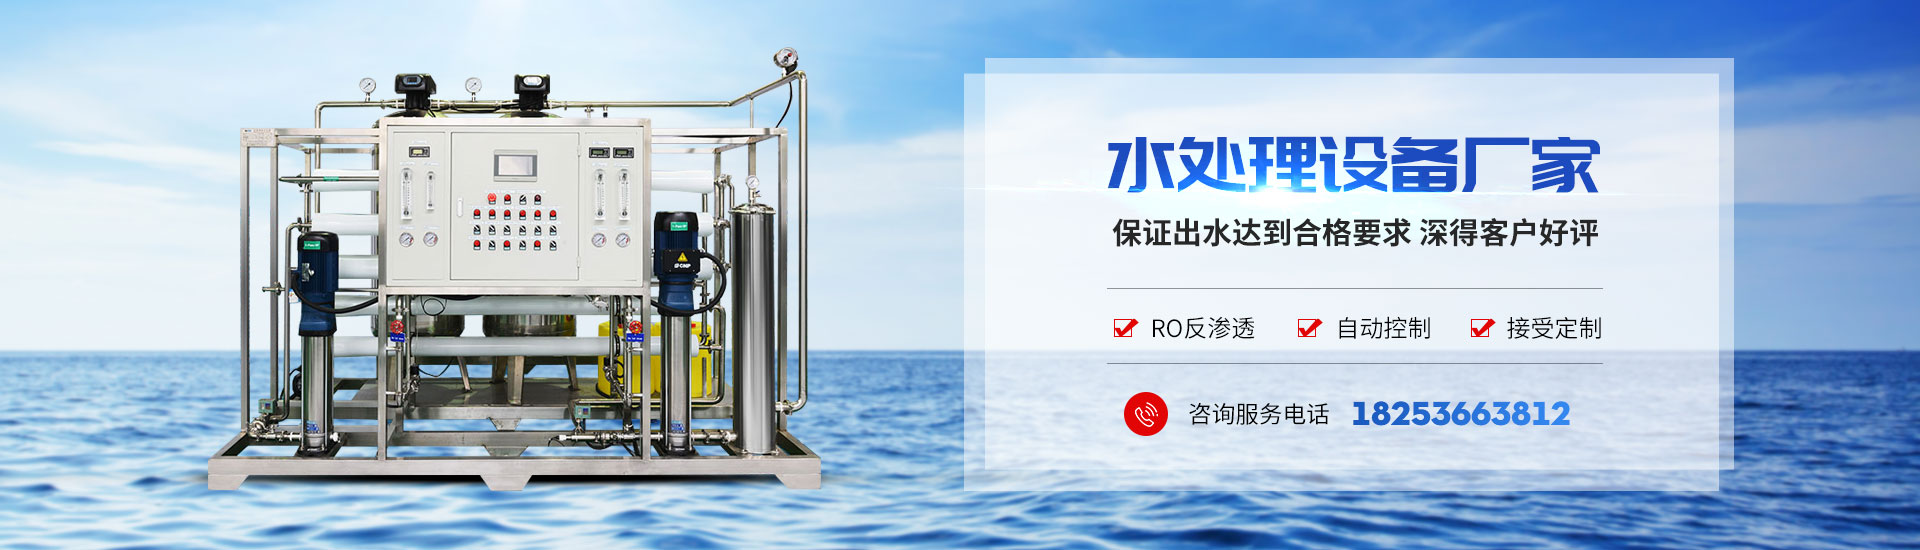 青州市同泰水处理设备有限公司水处理设备